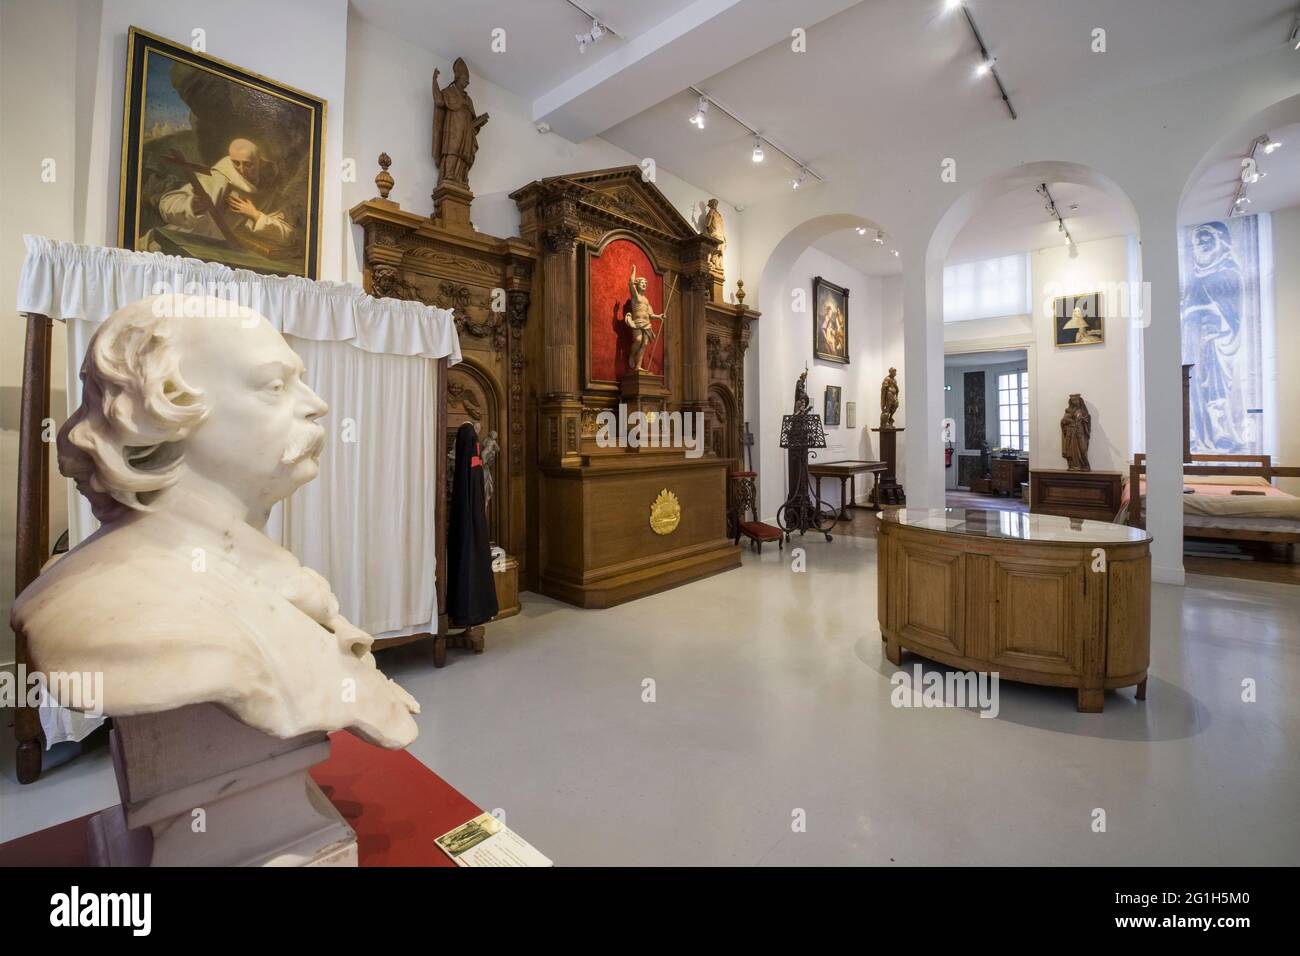 Rouen (Nord de la France) : Musée Flaubert et Musée d'Histoire médicale. L'ancienne salle de billard avec un buste en marbre de Gustave Flaubert sculpté par Leopo Banque D'Images